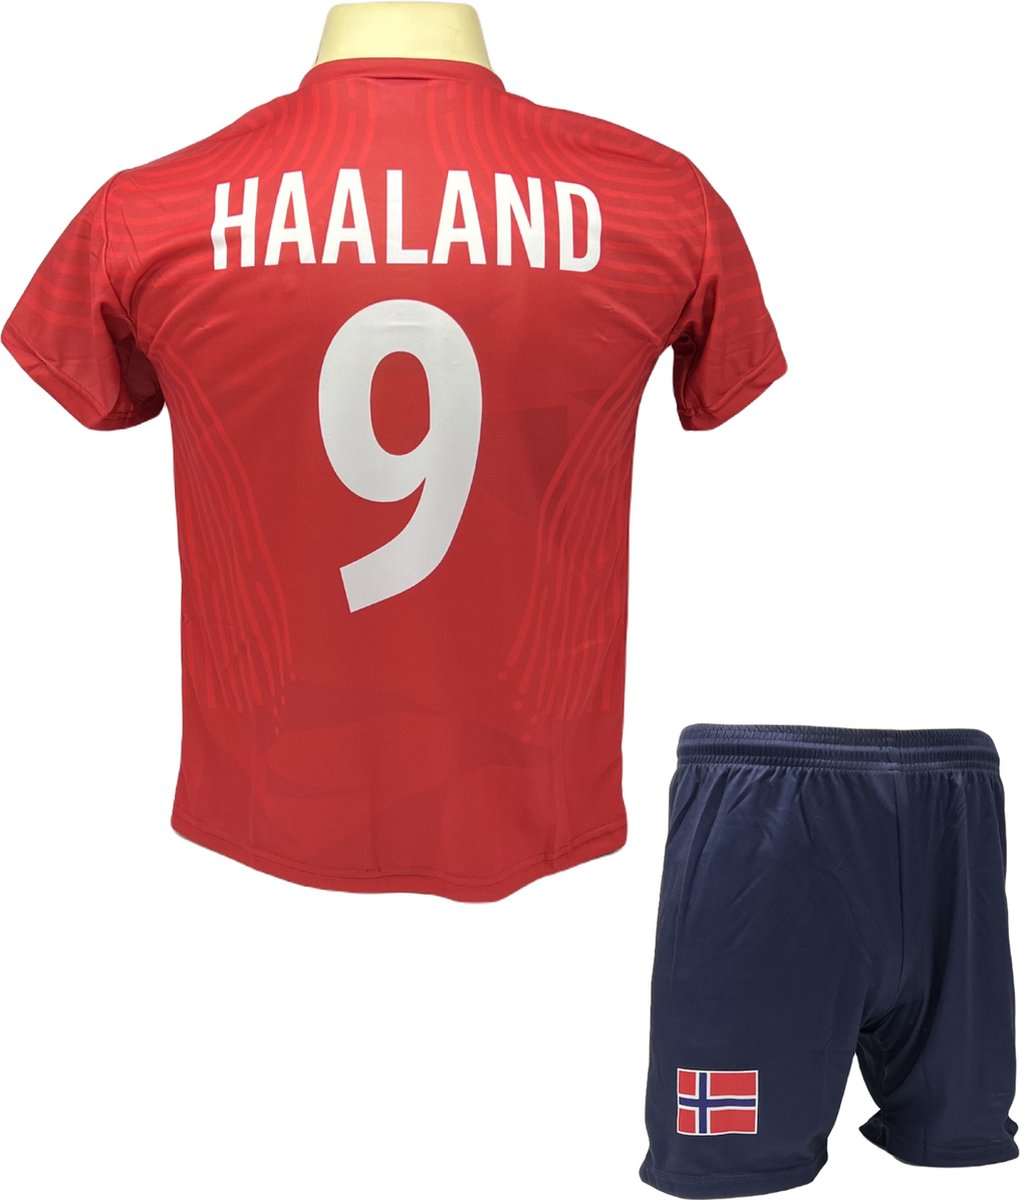 Haaland Voetbalshirt en Broekje Voetbaltenue Noorwegen - Maat XL